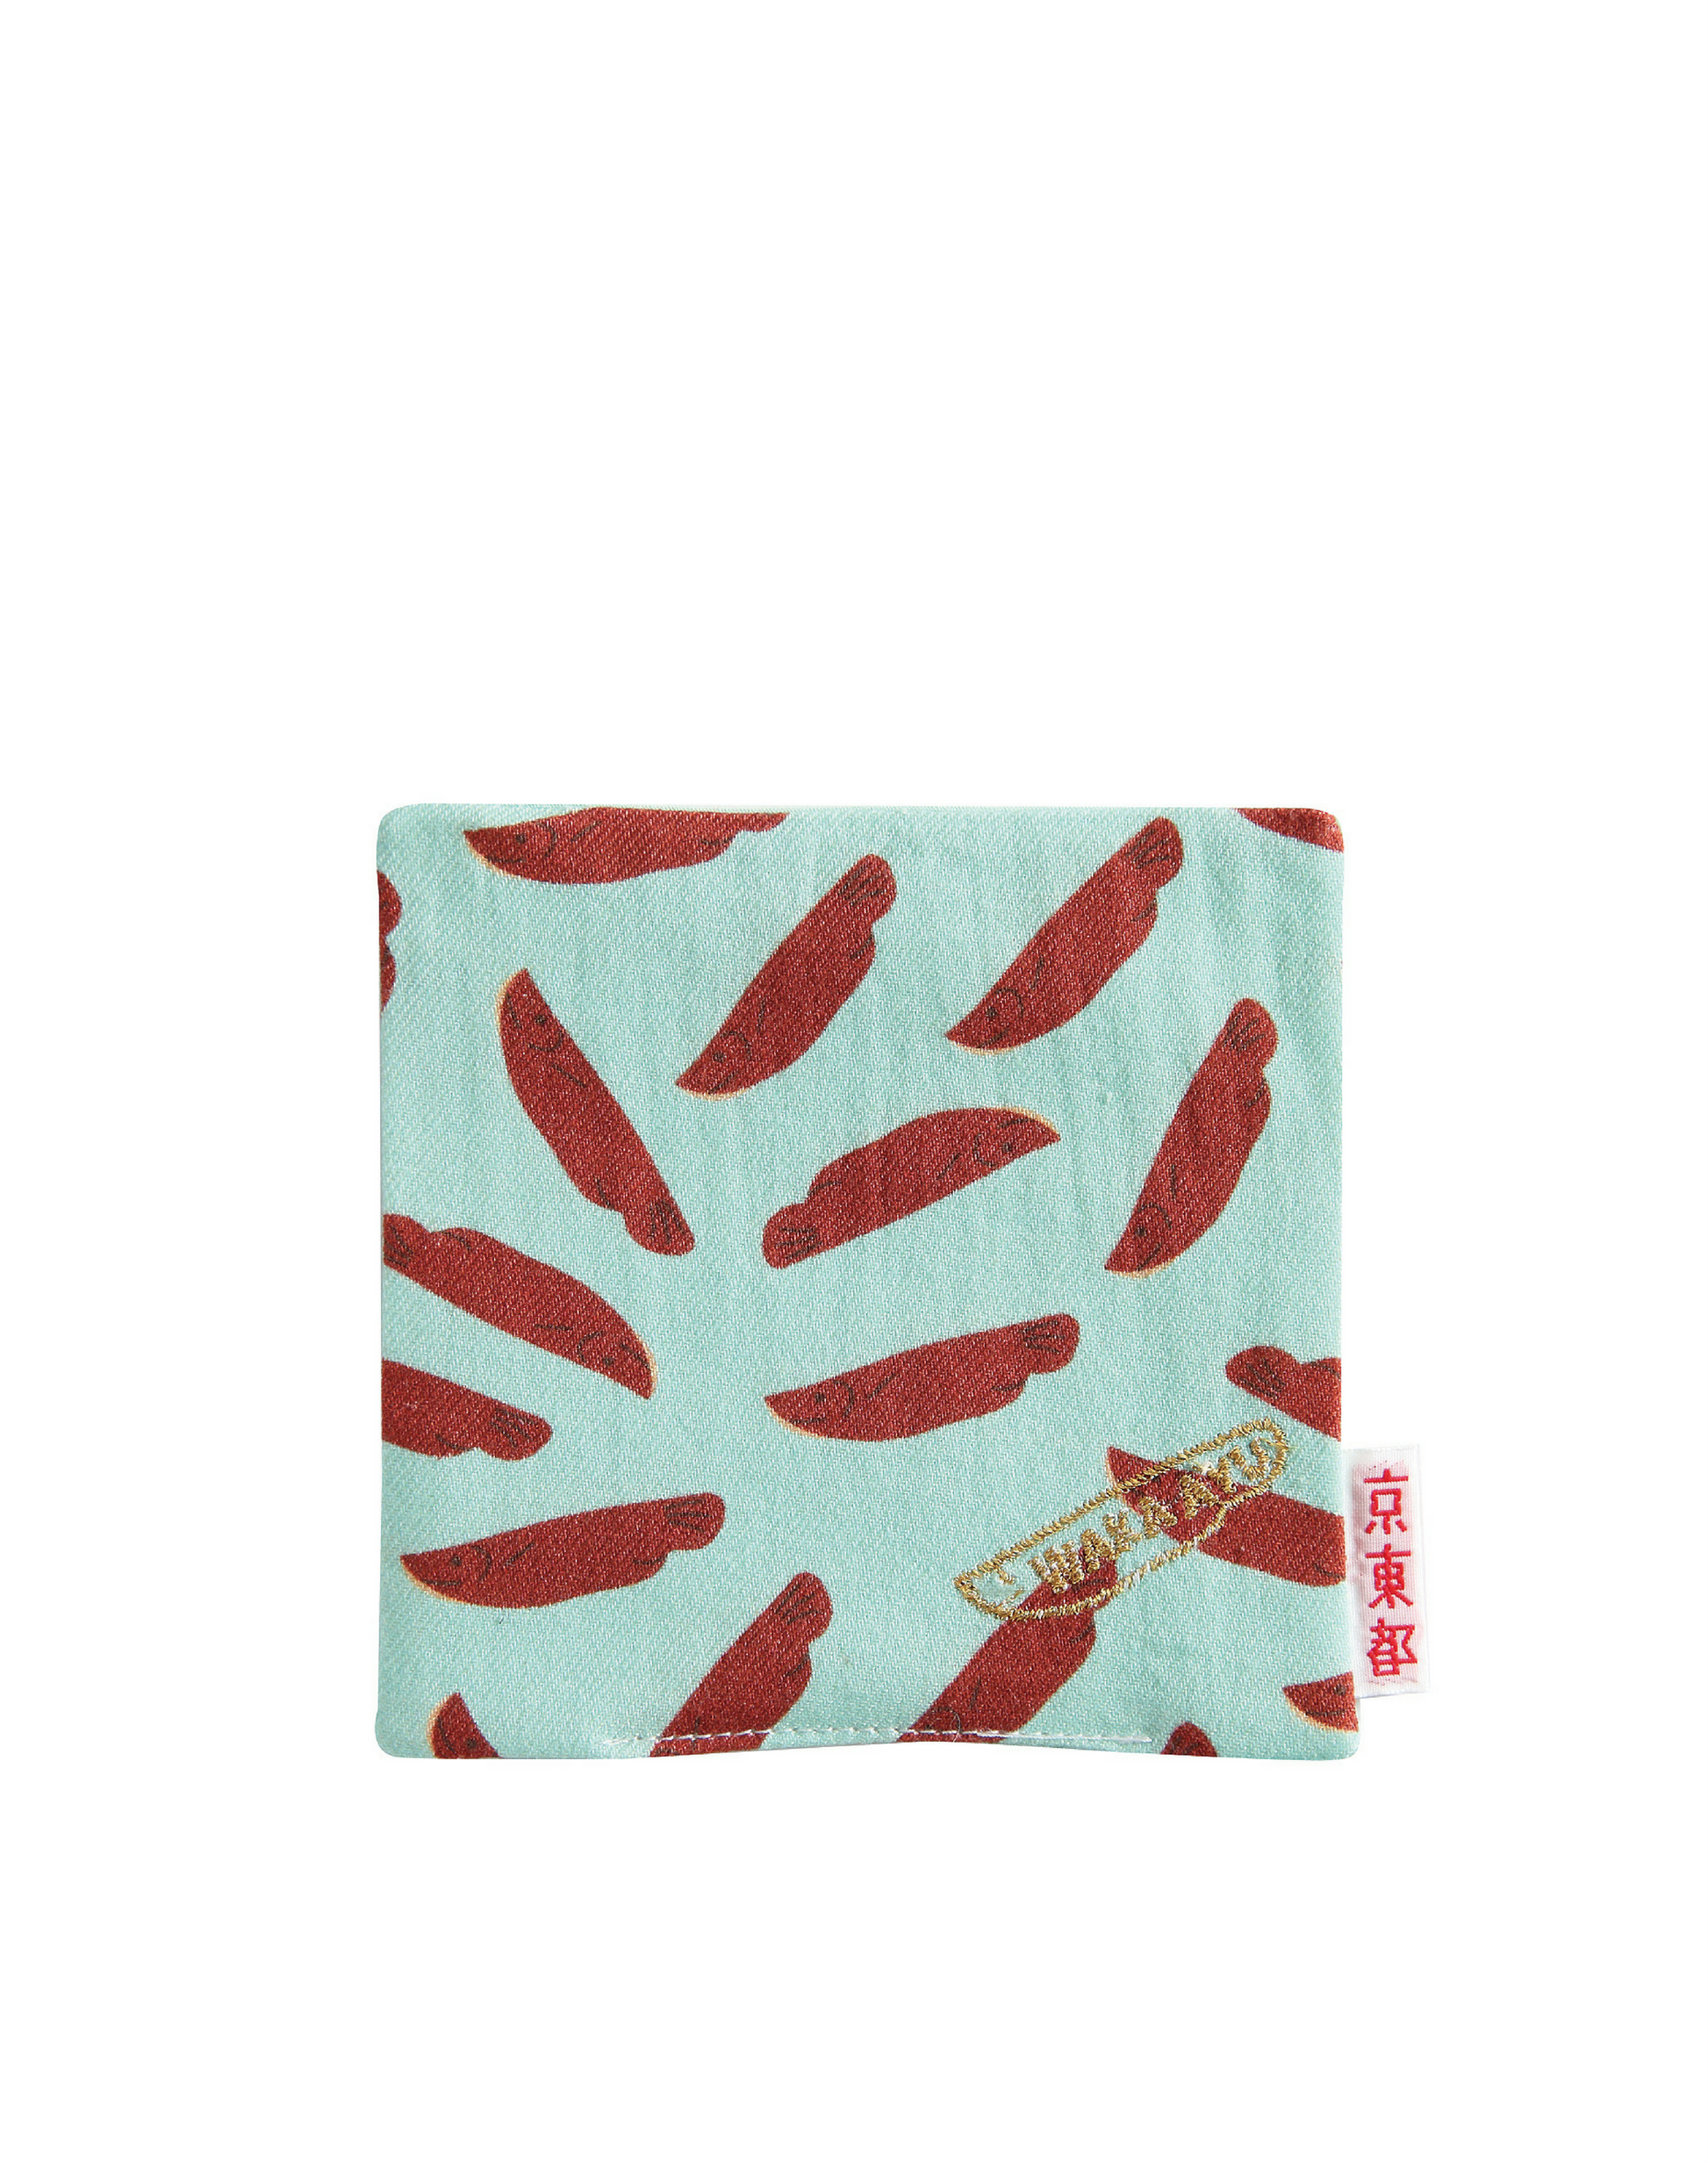 MONOLAB Online Shop - Coaster Sweetfish Shaped Confection